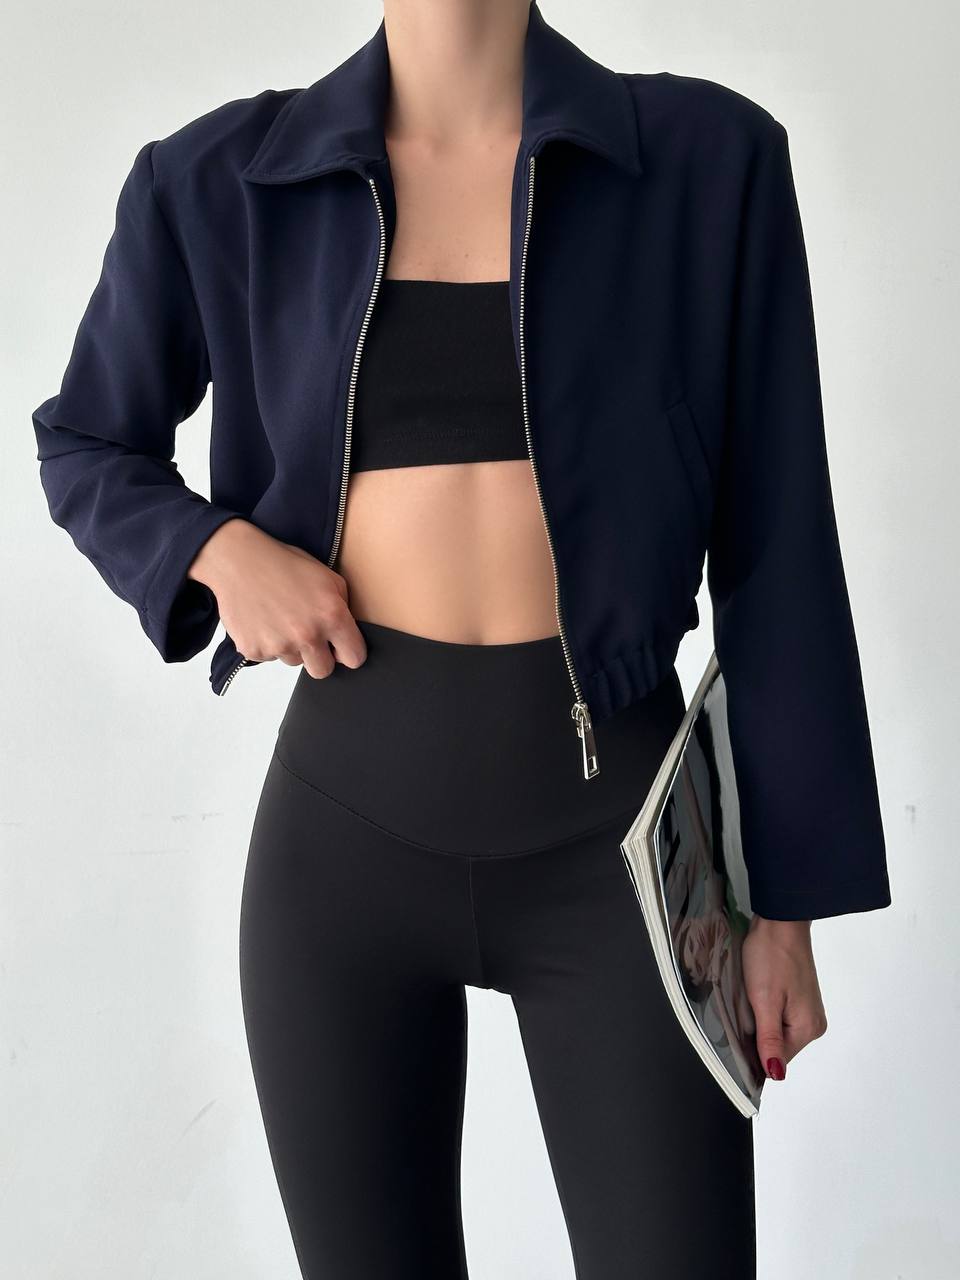 A wholesale clothing model wears Bomber Jacket - Navy Blue, Turkish wholesale Jacket of Qesto Fashion